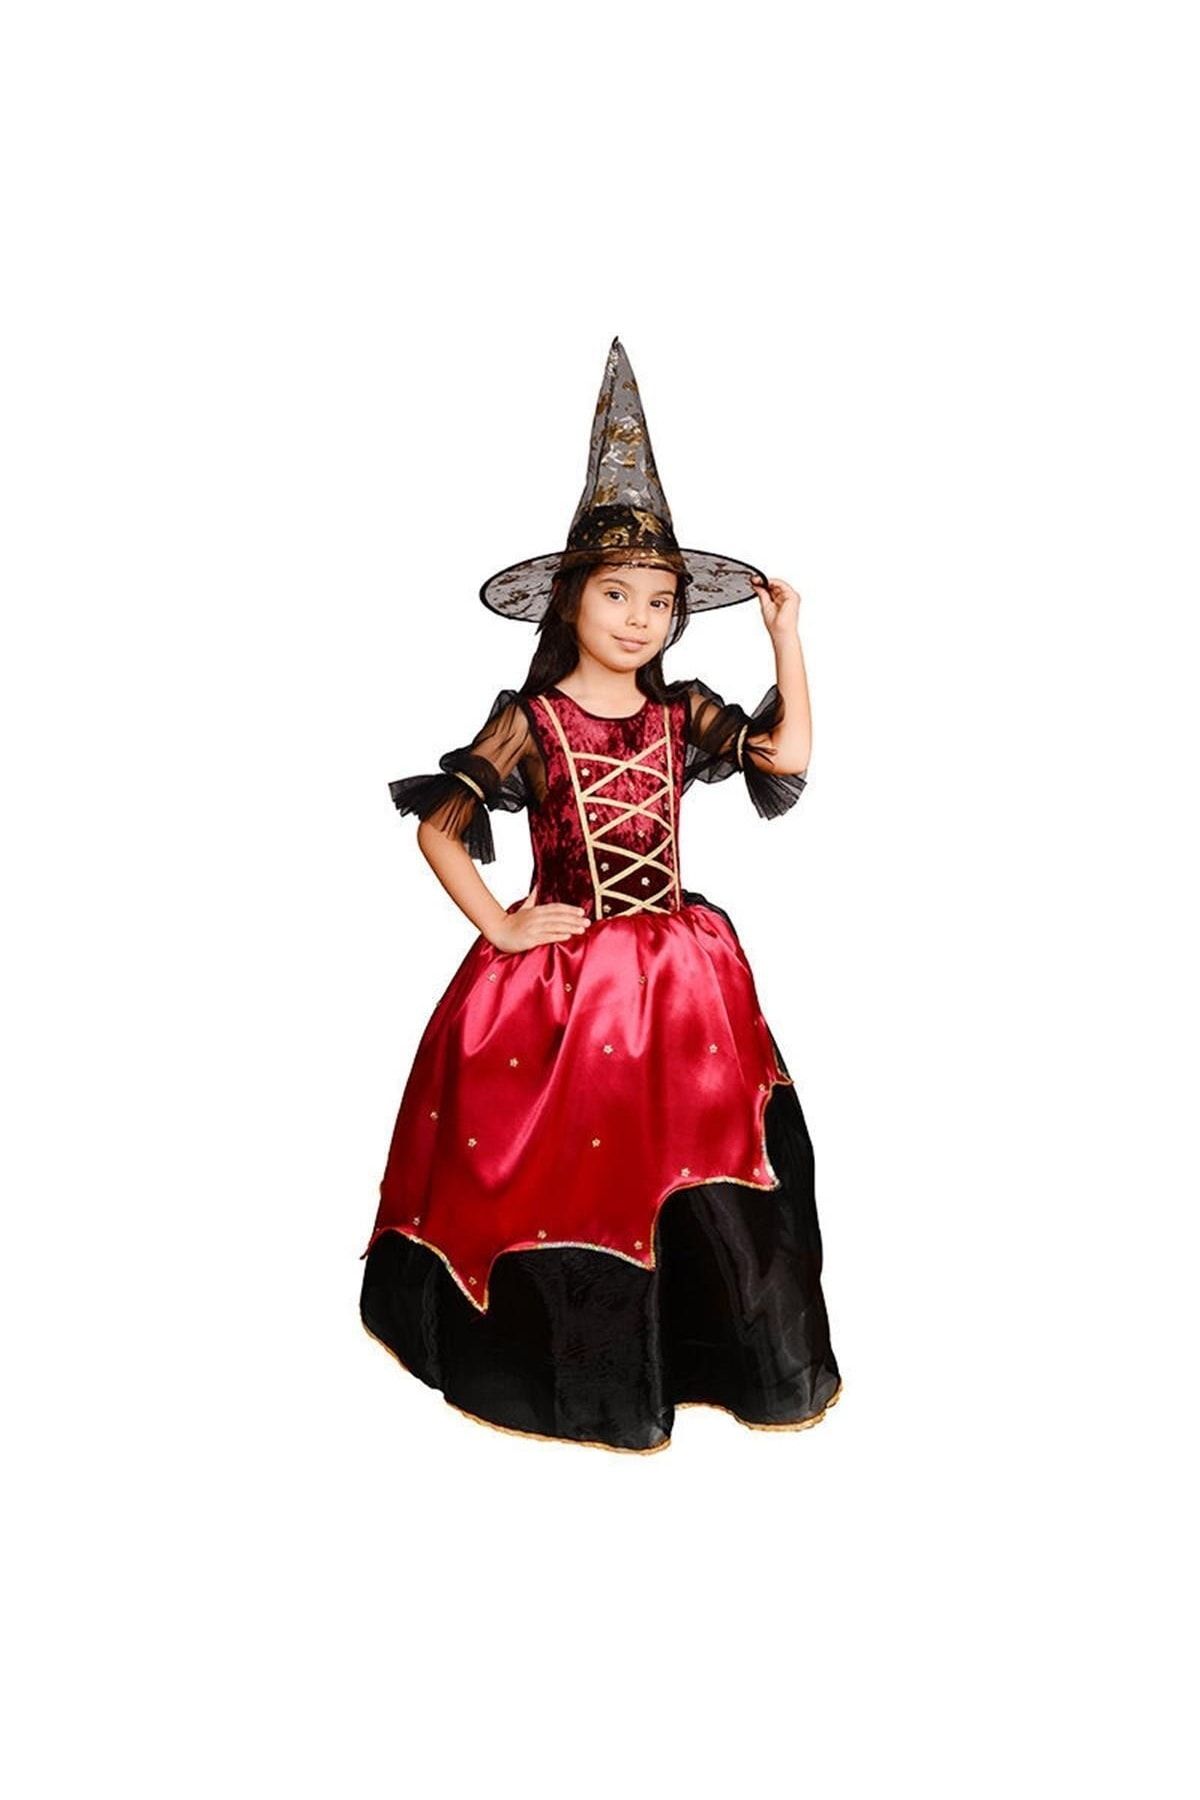 Mashotrend Bordo Tarlatanlı Cadı Kostümü + Cadı Şapkası - Cadılar Bayramı Kostümü - Halloween Kostüm